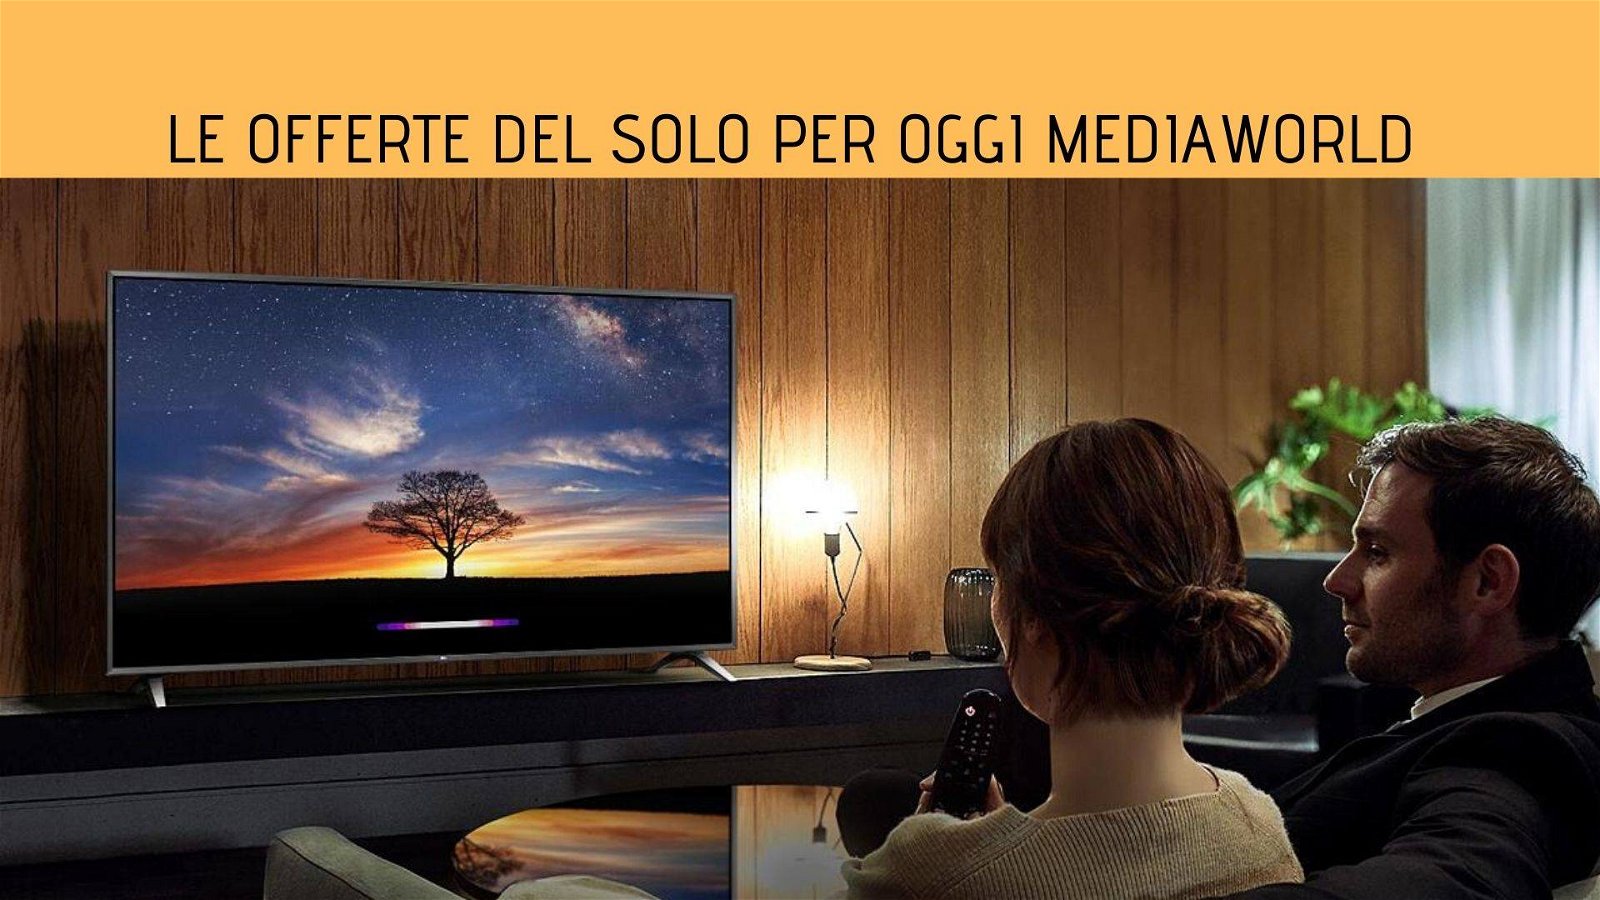 Immagine di Smart tv, smartphone e tanti elettrodomestici in offerta nel solo per oggi Mediaworld!